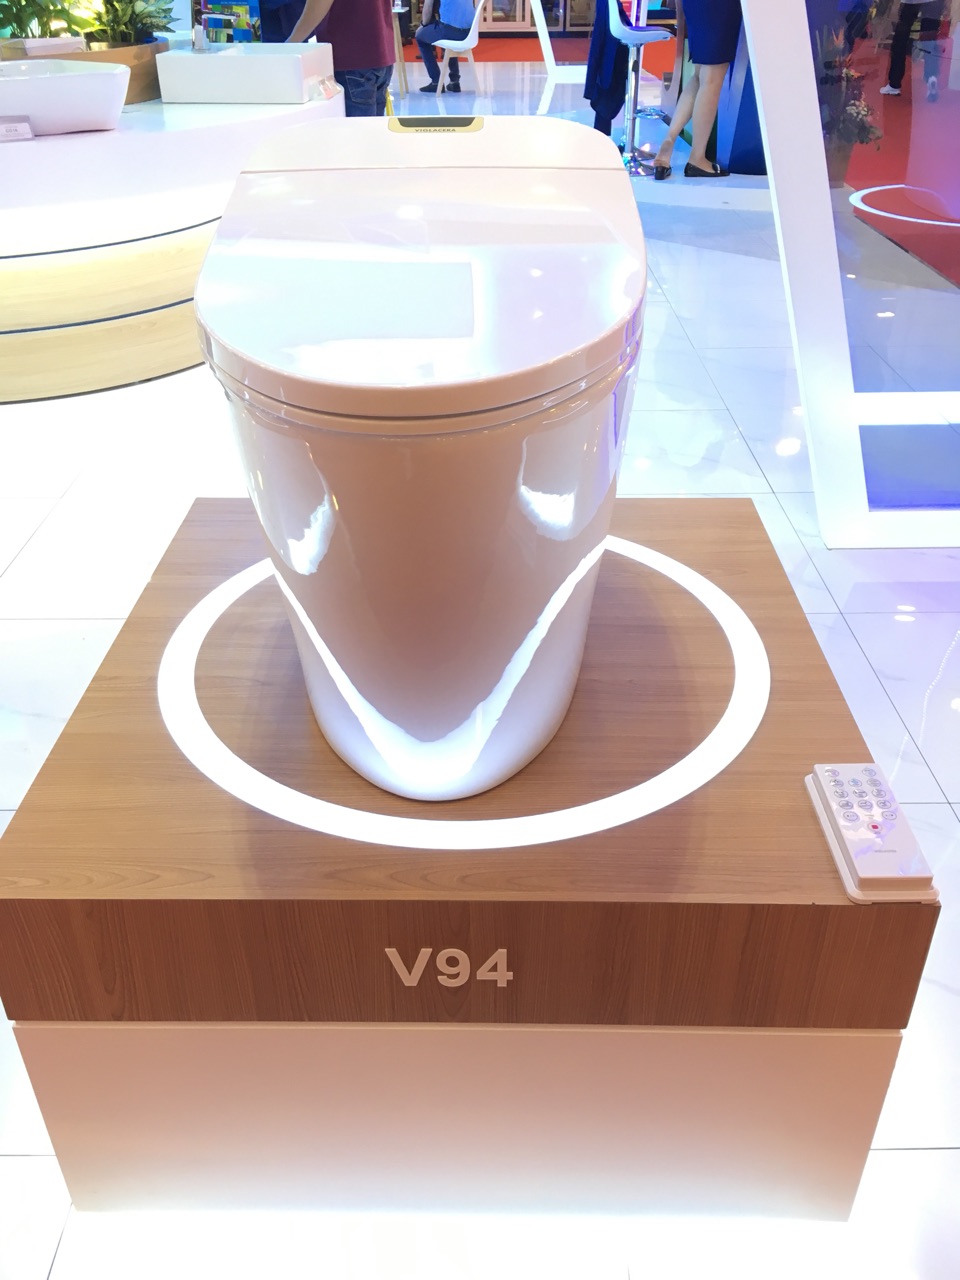 viglacera cho ra mắt dòng sản phẩm mới V-Smart 5